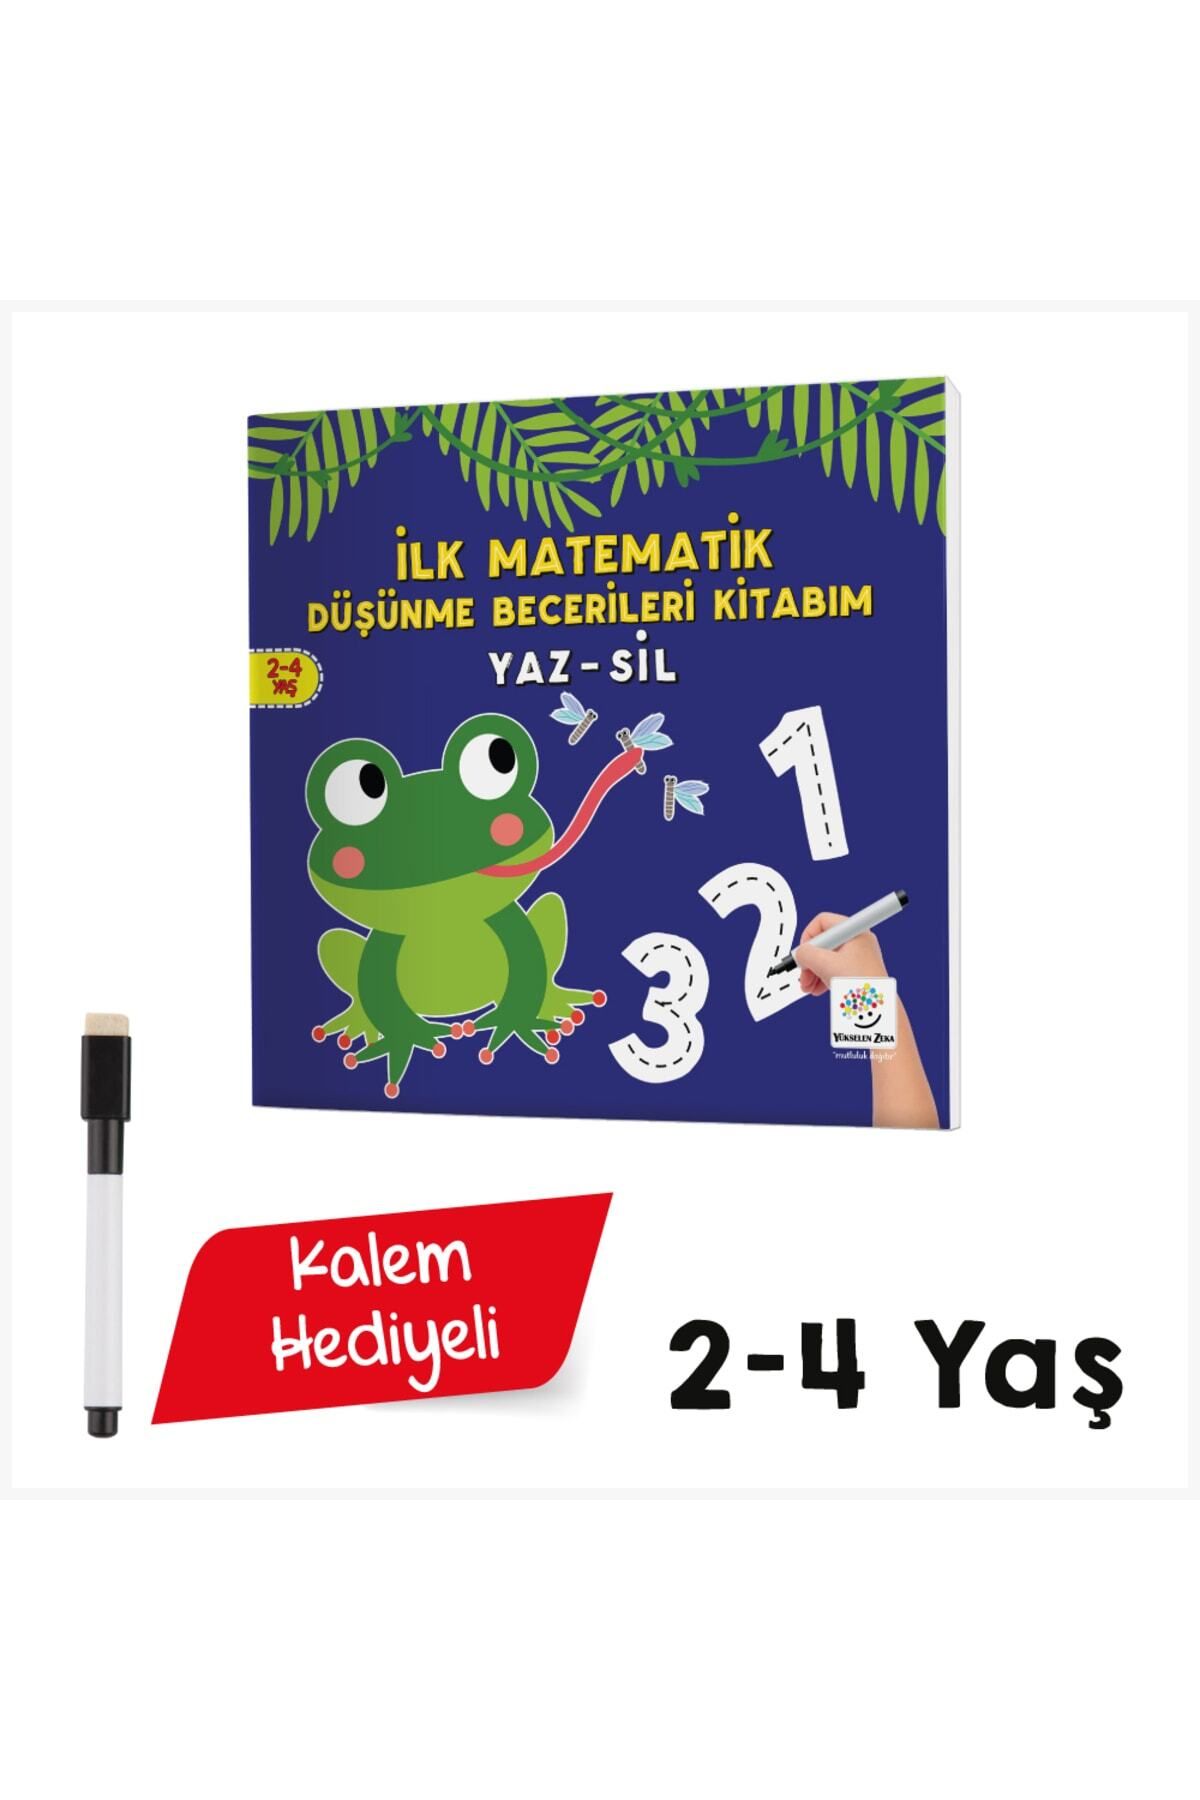 Yükselen Zeka Yayınları 2-4 Yaş Mucit Karınca Yaz-sil Serisi - Ilk Matematik Düşünme Becerileri Kitabım